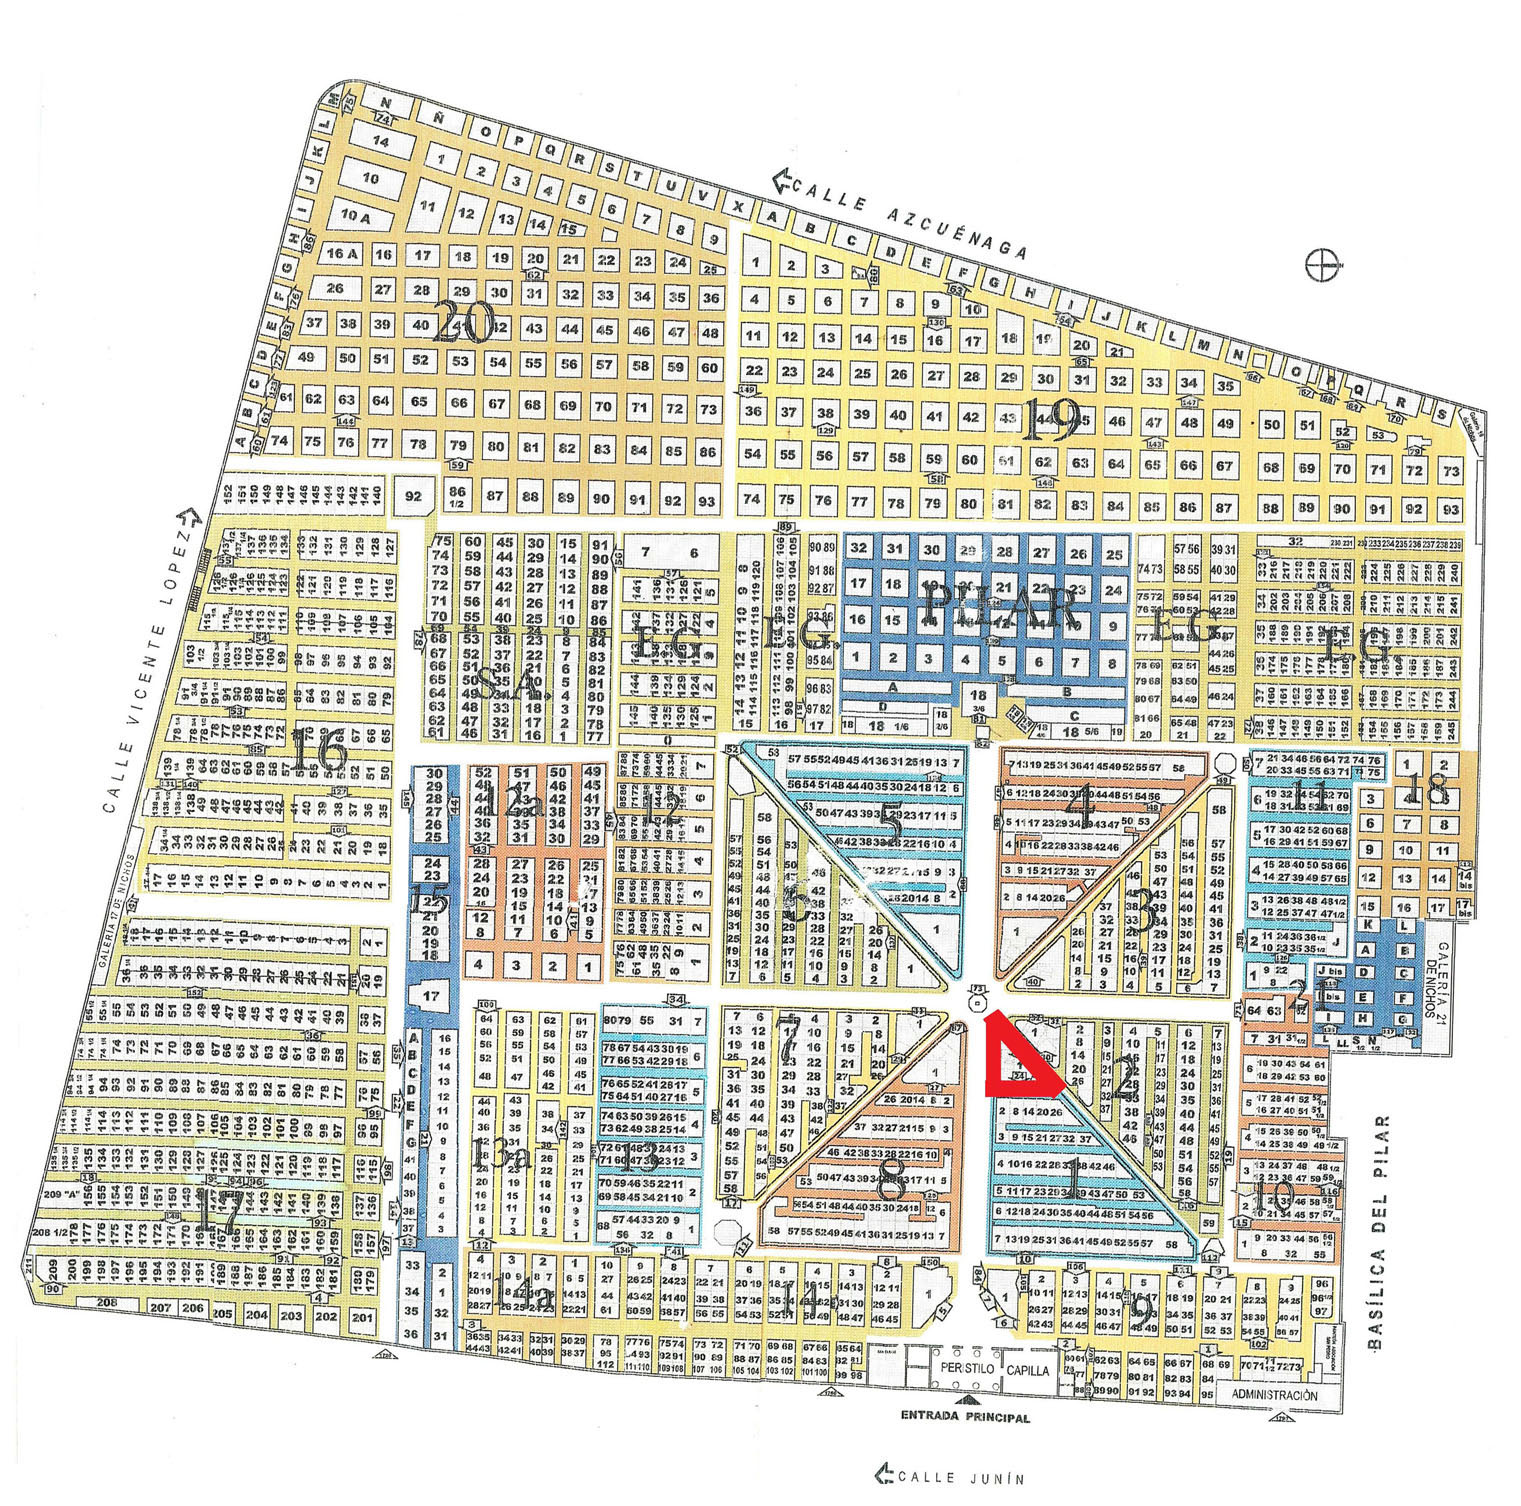 Plano del Cementerio de
La Recoleta. El triángulo rojo señala la ubicación de los monumentos.